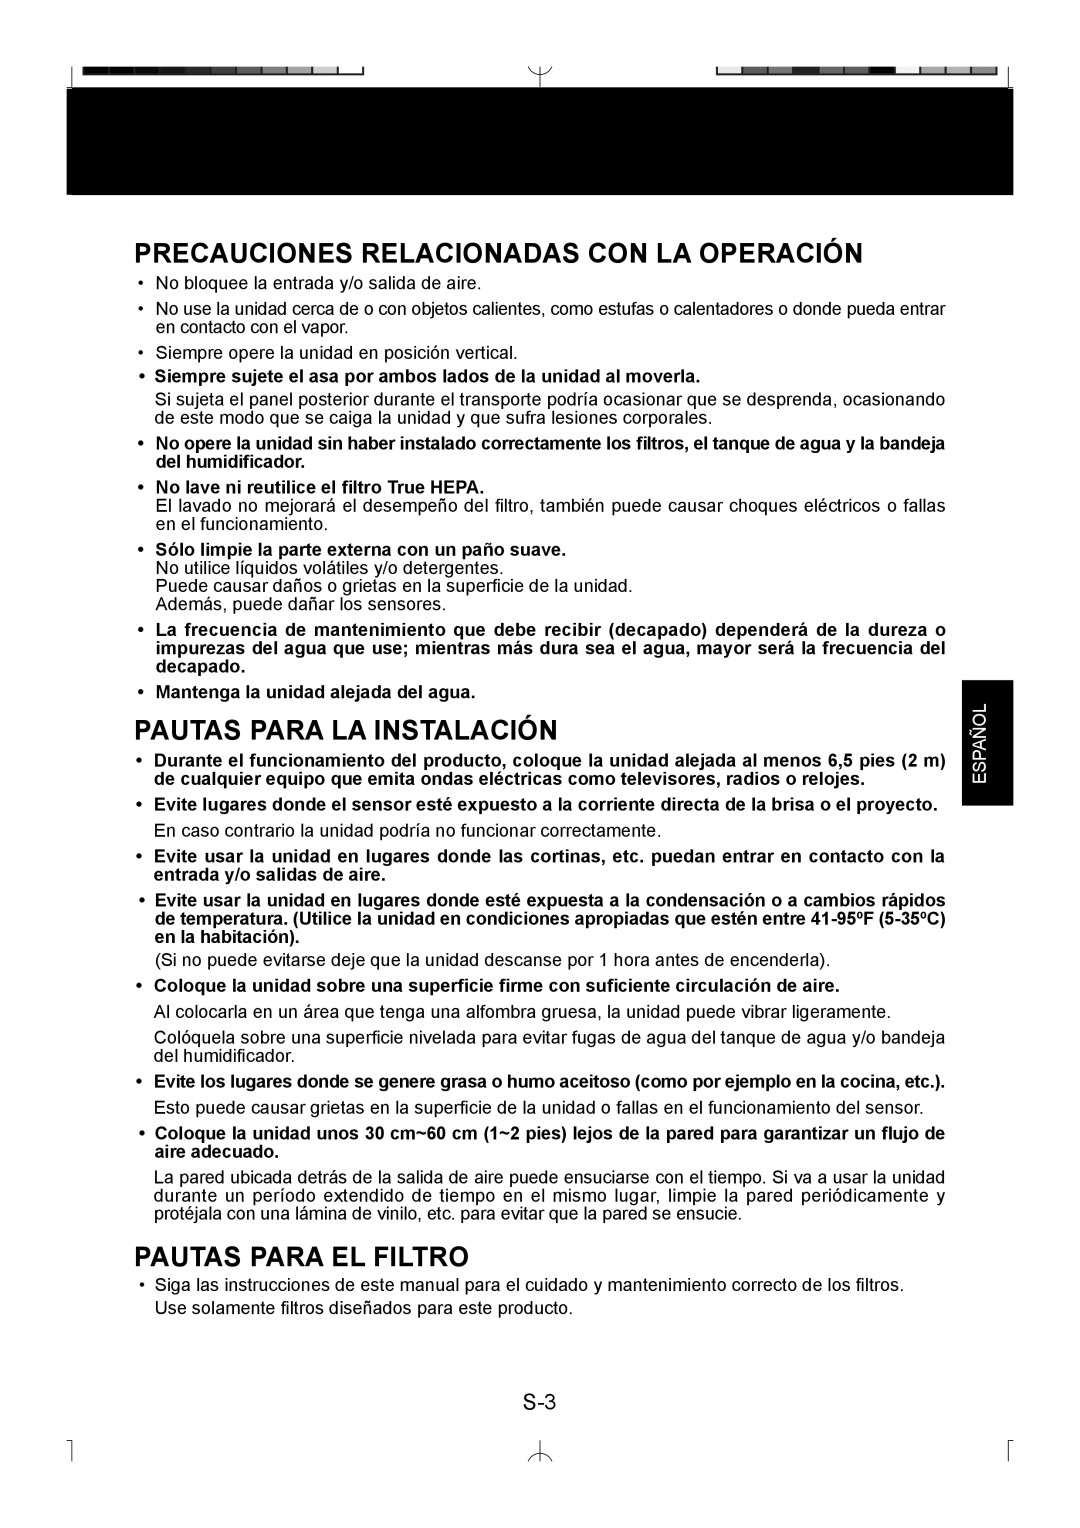 Sharp KC-850U Precauciones Relacionadas Con La Operación, Pautas Para La Instalación, Pautas Para El Filtro, Español 